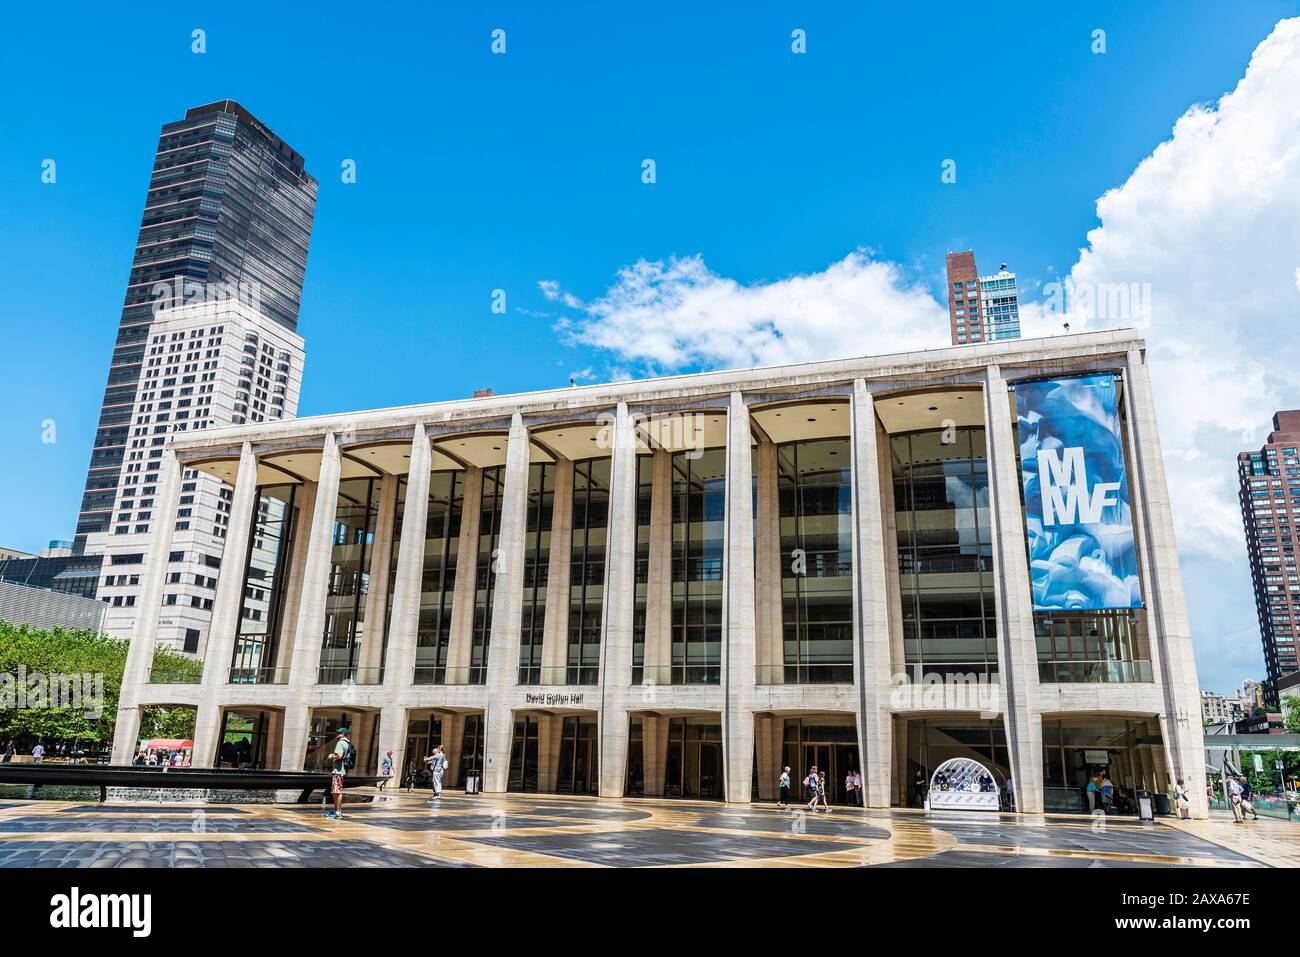 New York City, États-Unis - 3 août 2018 : façade du théâtre David H. Koch, théâtre de ballet du Lincoln Center for the Performing Arts with People Banque D'Images